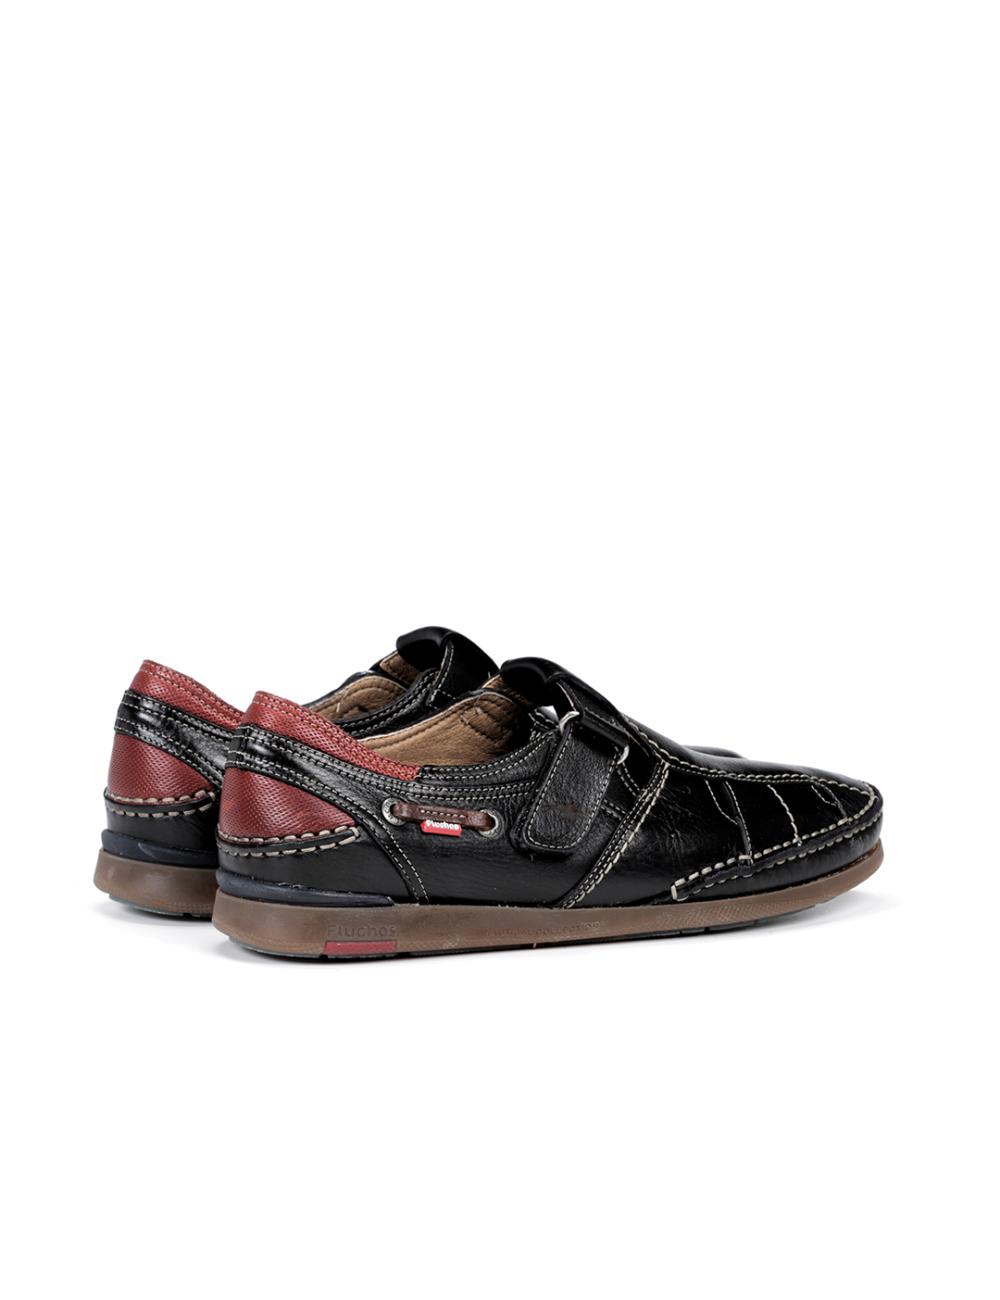 Fluchos - Zapato casual de hombre 9882